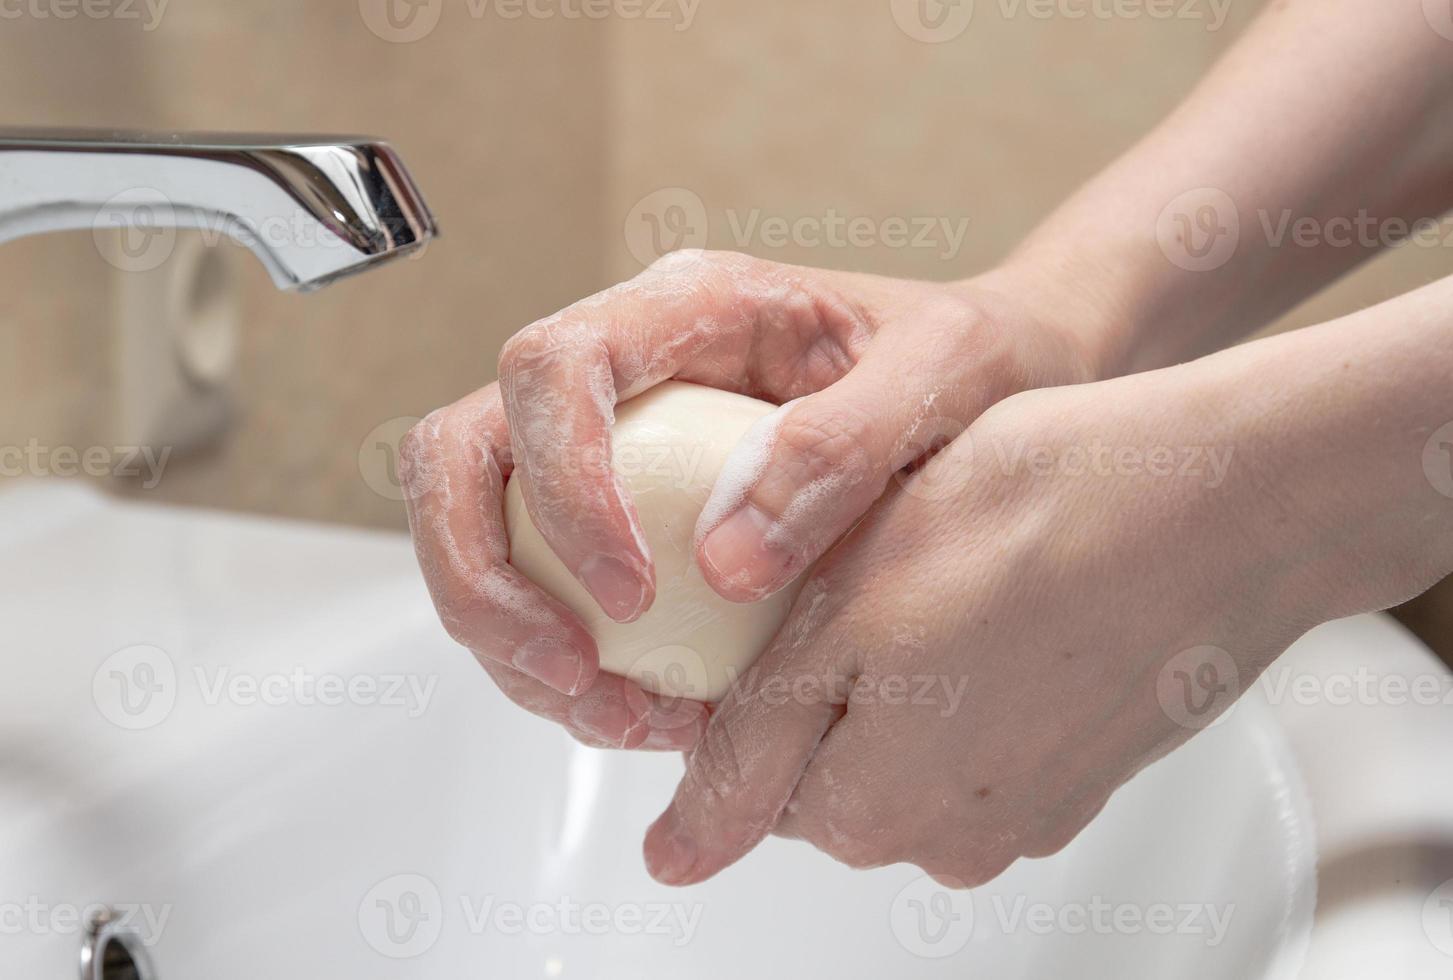 hygiëne. handen schoonmaken. handen wassen met zeep. vrouwenhand met witte zeep en schuim. bescherm jezelf tegen coronavirus covid-19 pandemie foto